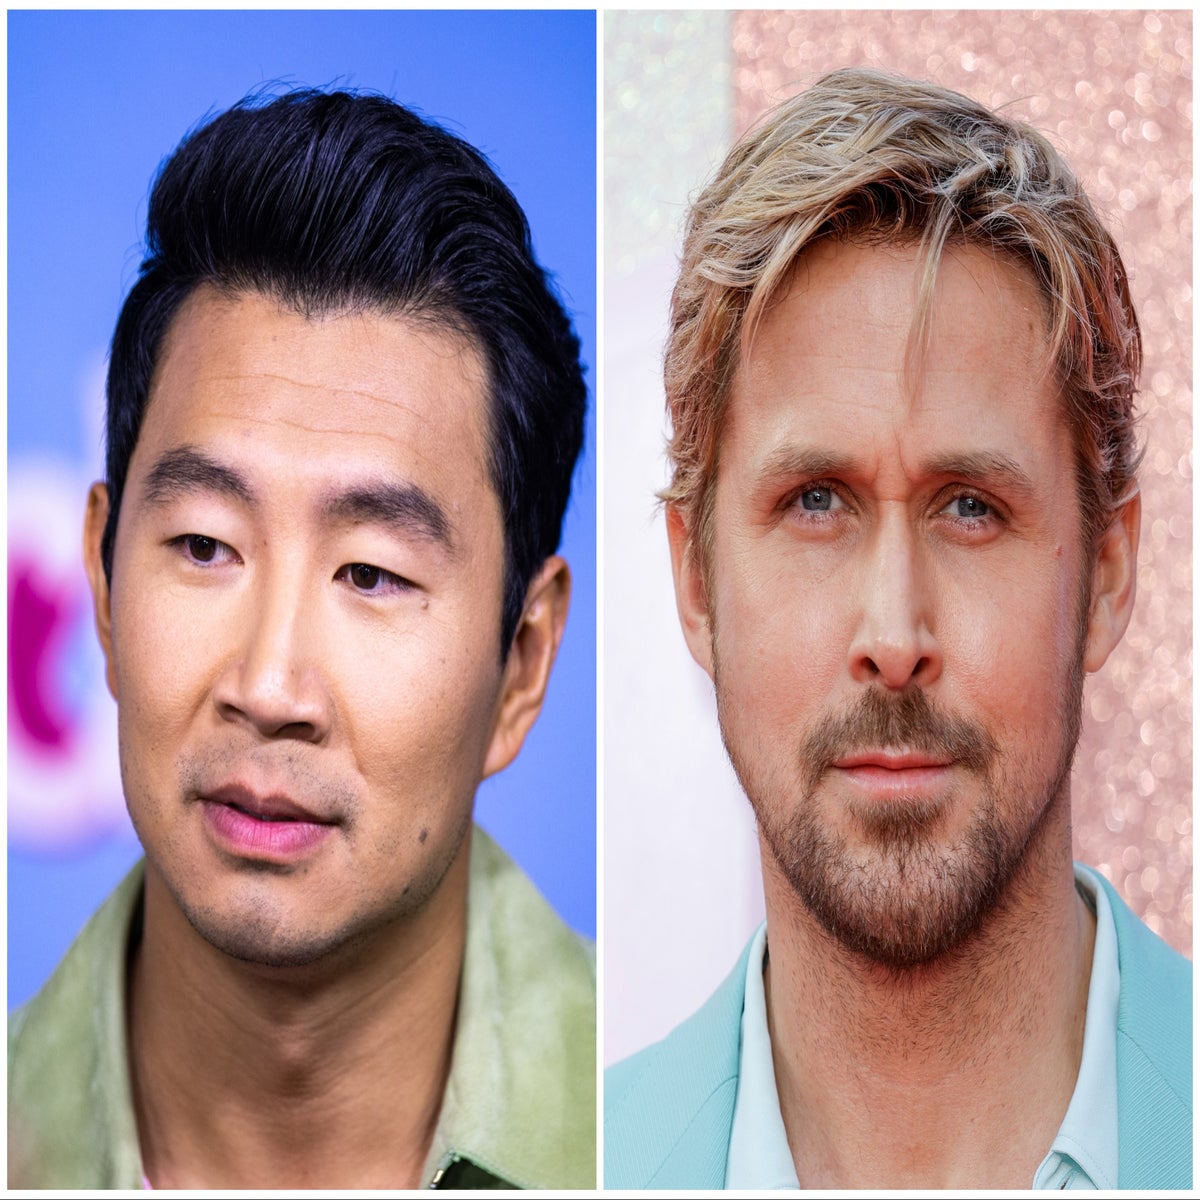 Simu Liu Praises Fellow Ken Ryan Gosling as 'Best Human in Every Way